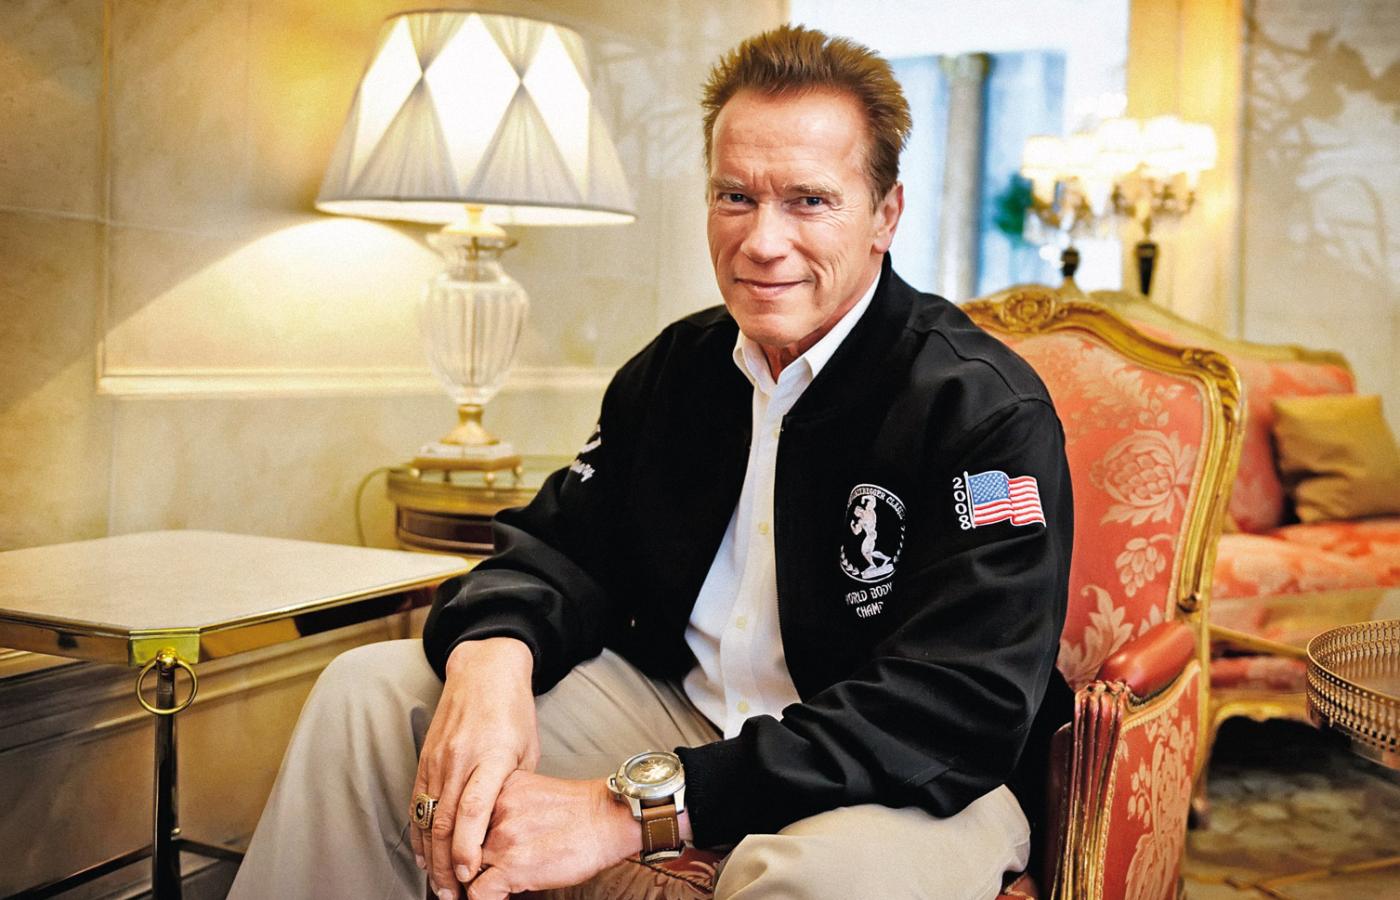 Arnold Schwarzenegger - kulturysta-aktor-polityk, którego uwielbiała cała Ameryka, nie zdołał jednak wyciągnąć Kalifornii z kryzysu.